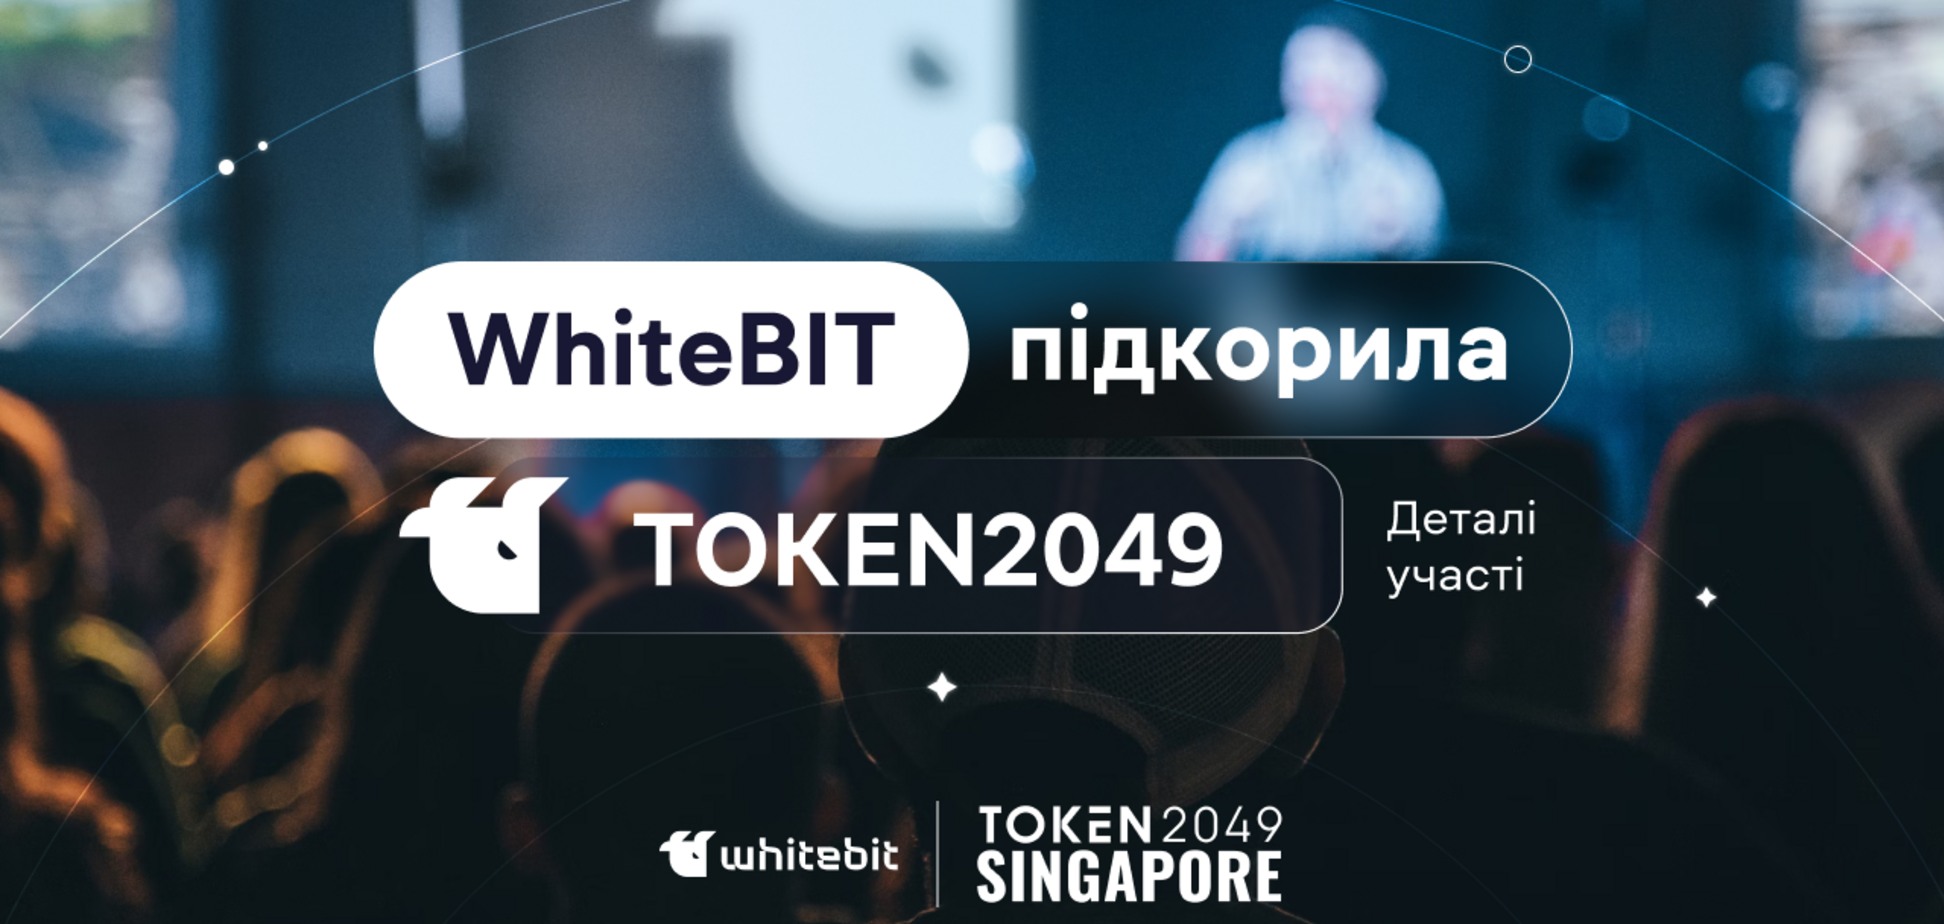 WhiteBIT стала єдиною криптокомпанією родом з України, яка брала участь і була партнером TOKEN2049